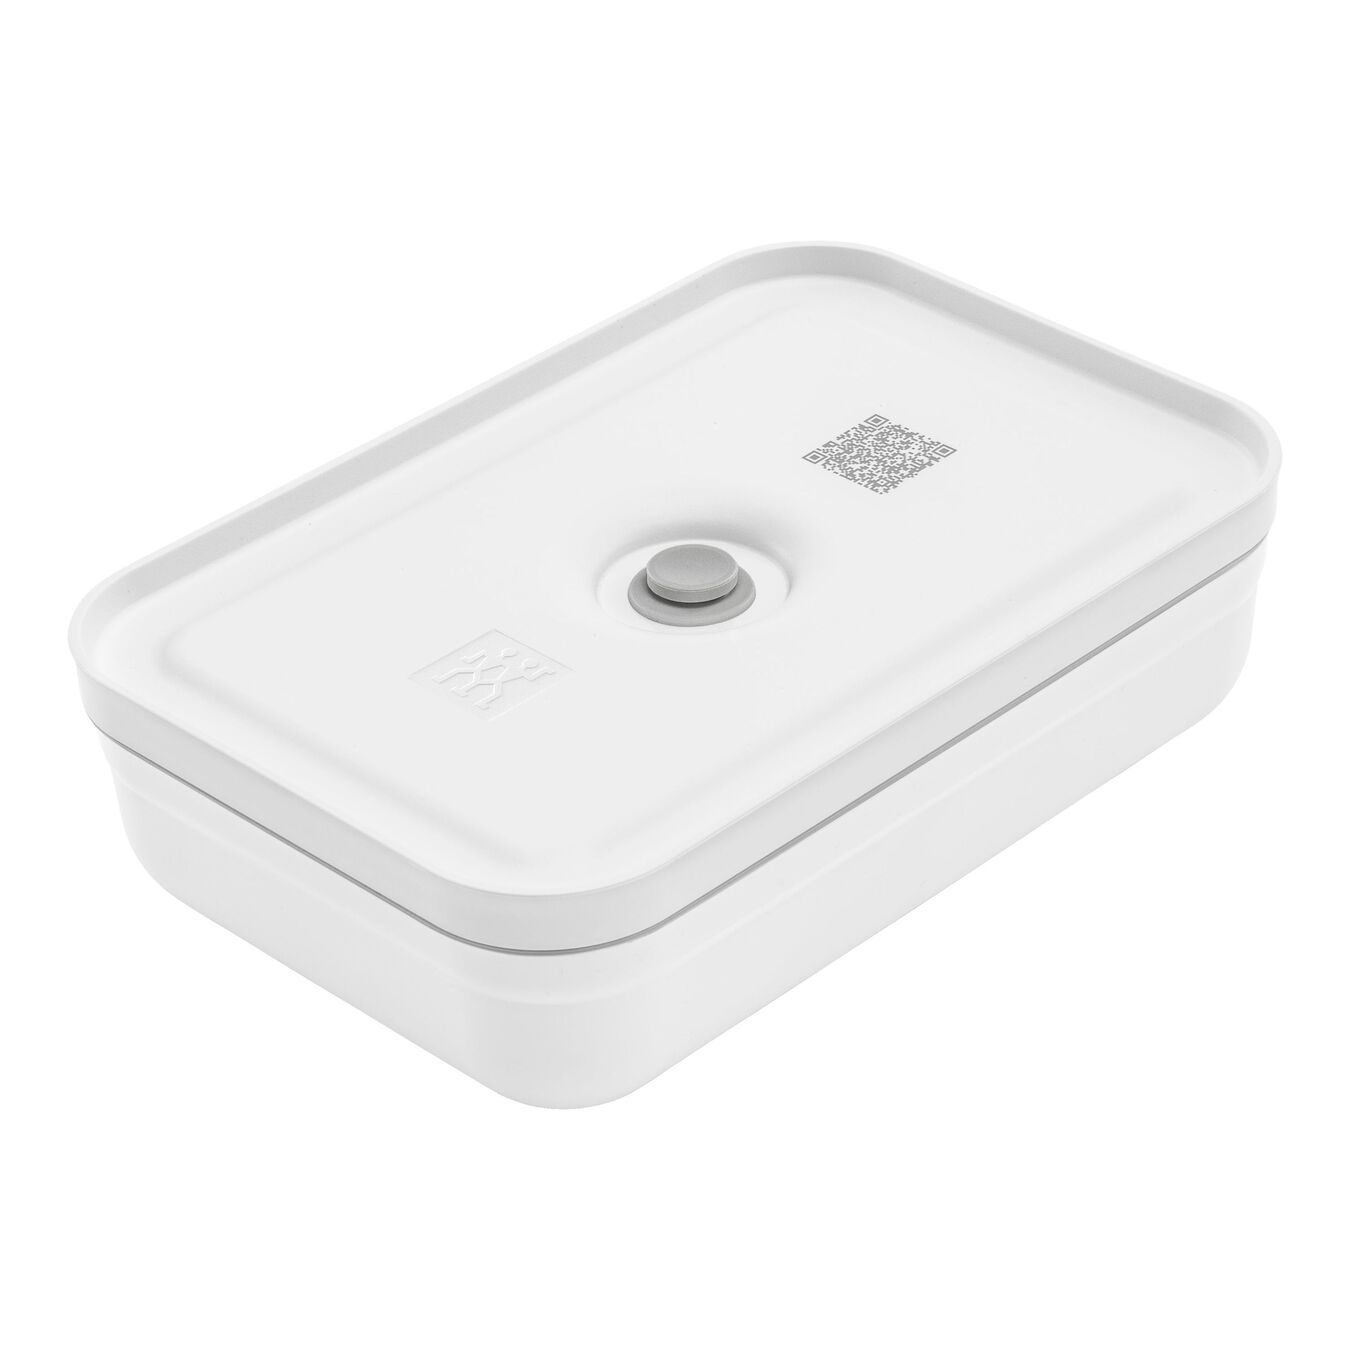 Lunch box sottovuoto L piatto, plastica, bianco-grigio,,large 1